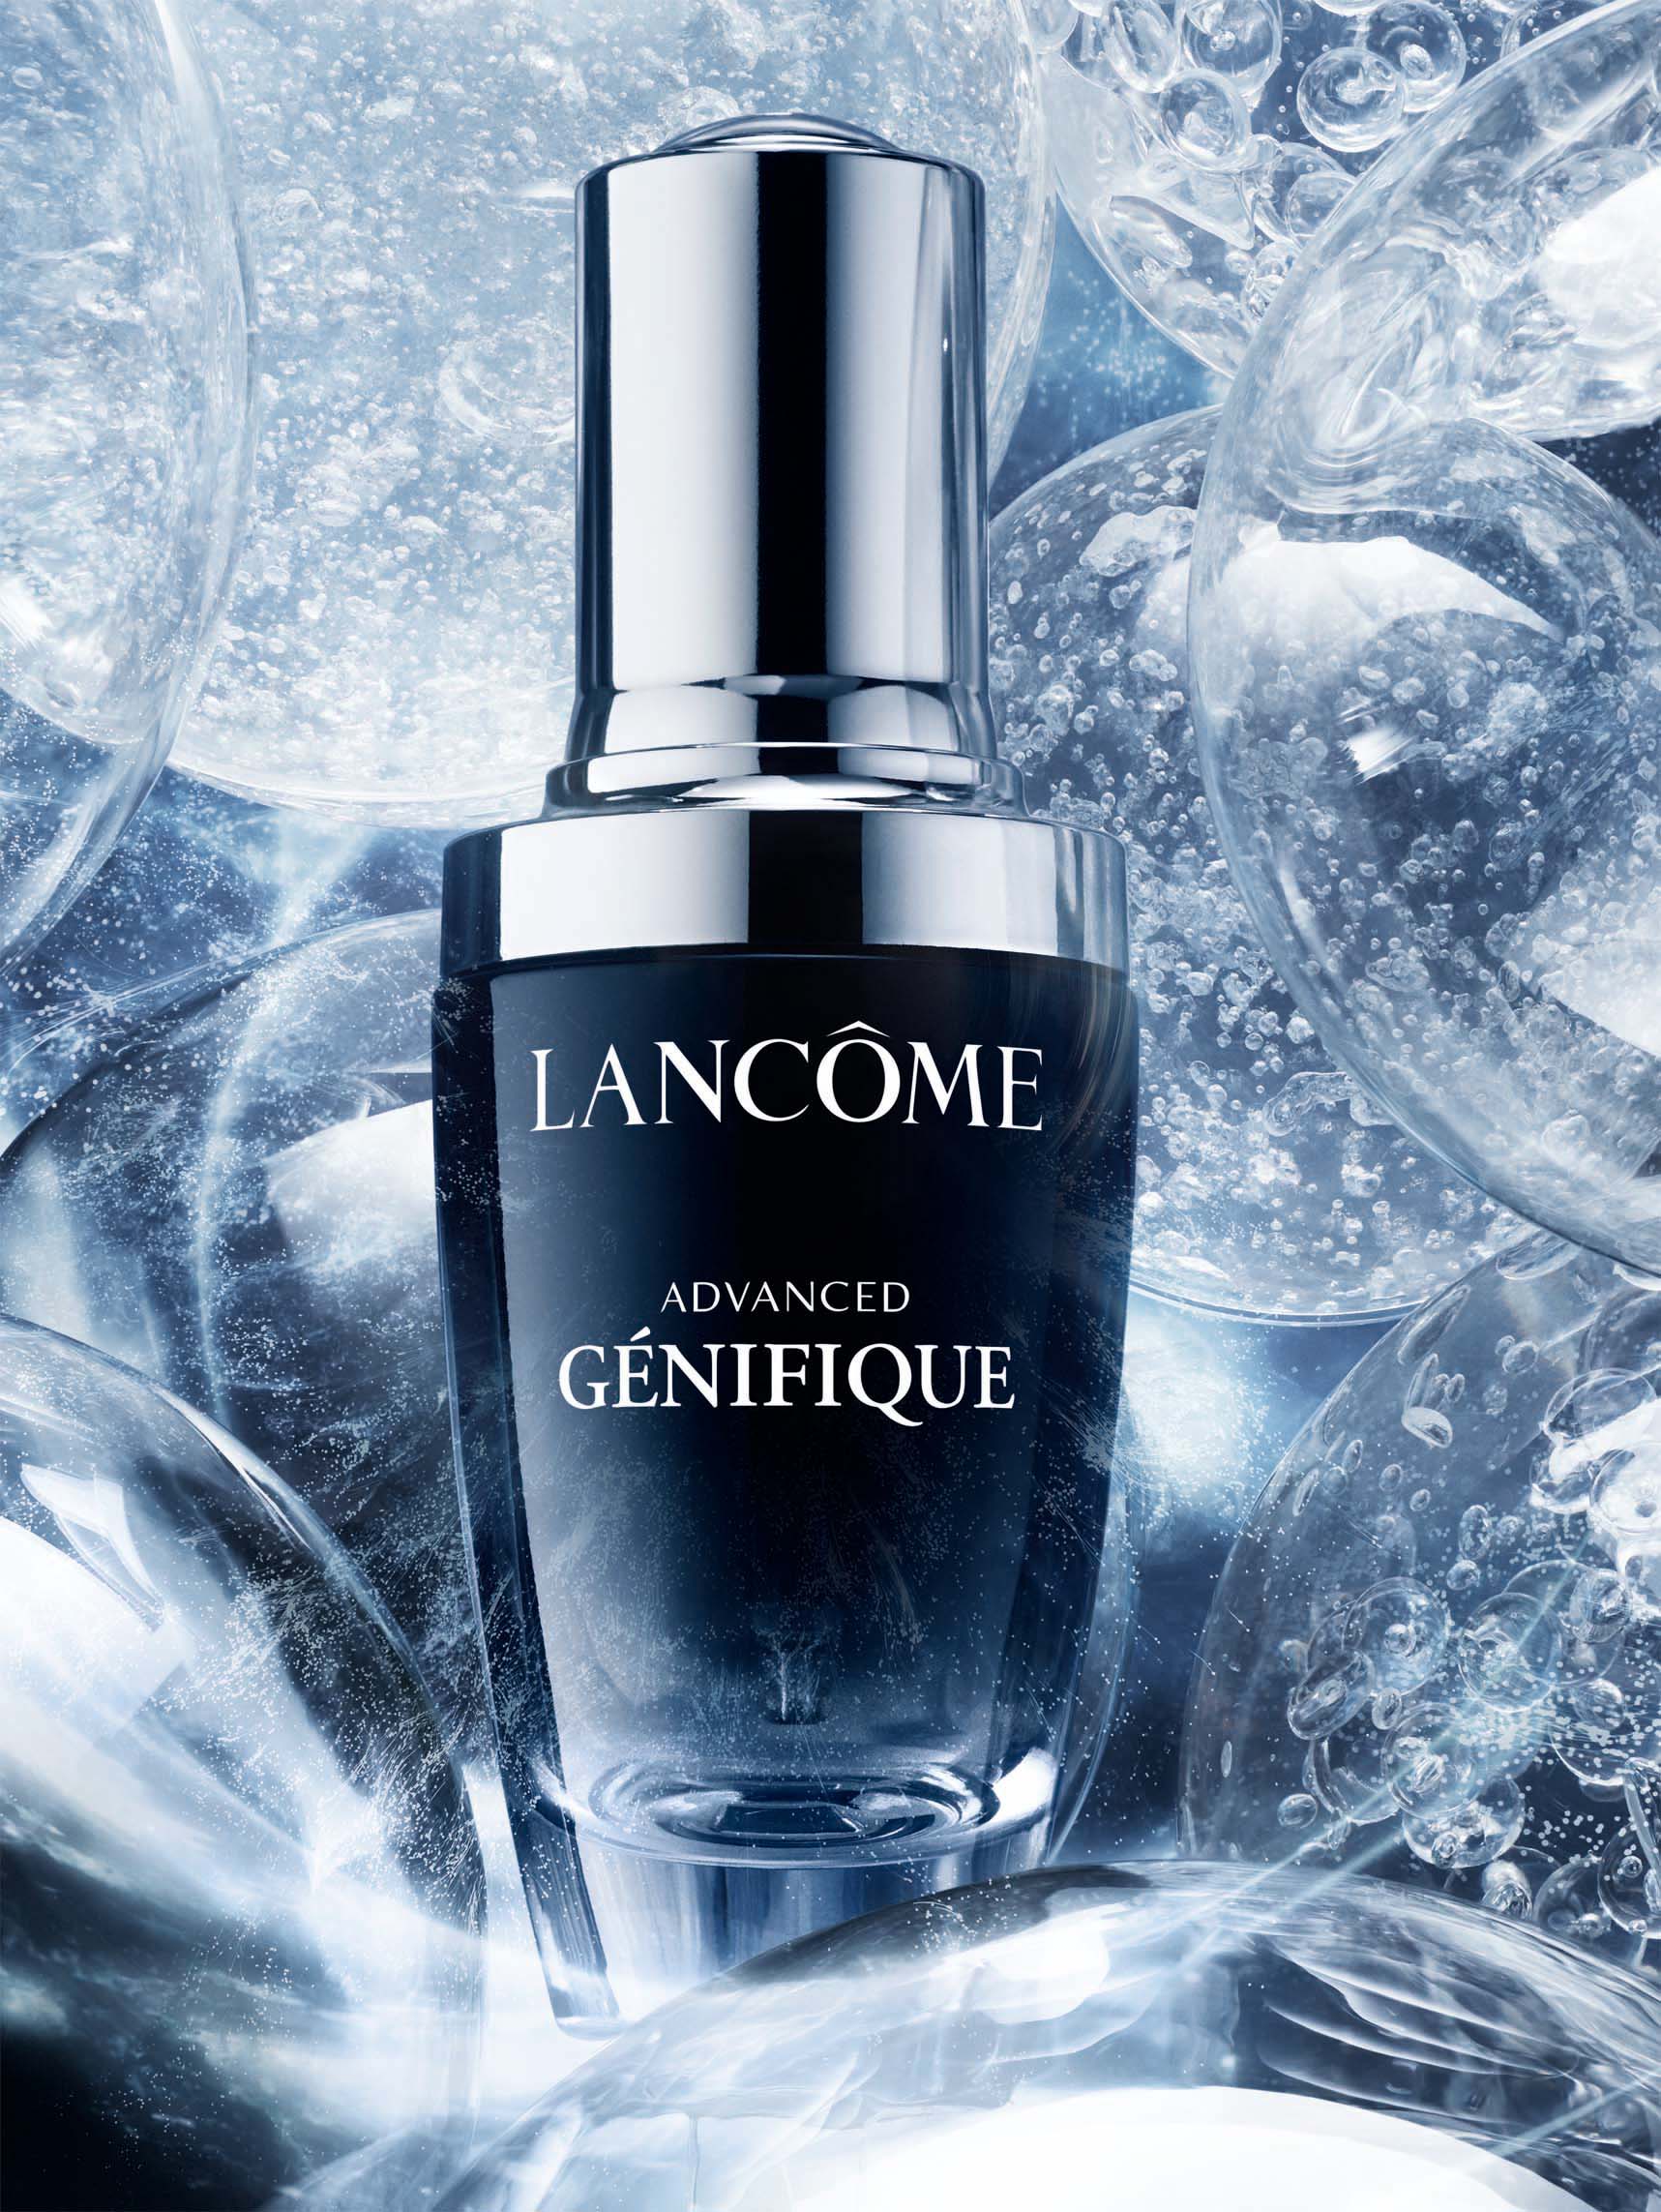 Lancôme’s Advanced Génifique is a Skincare Revolution with Microbiome Science